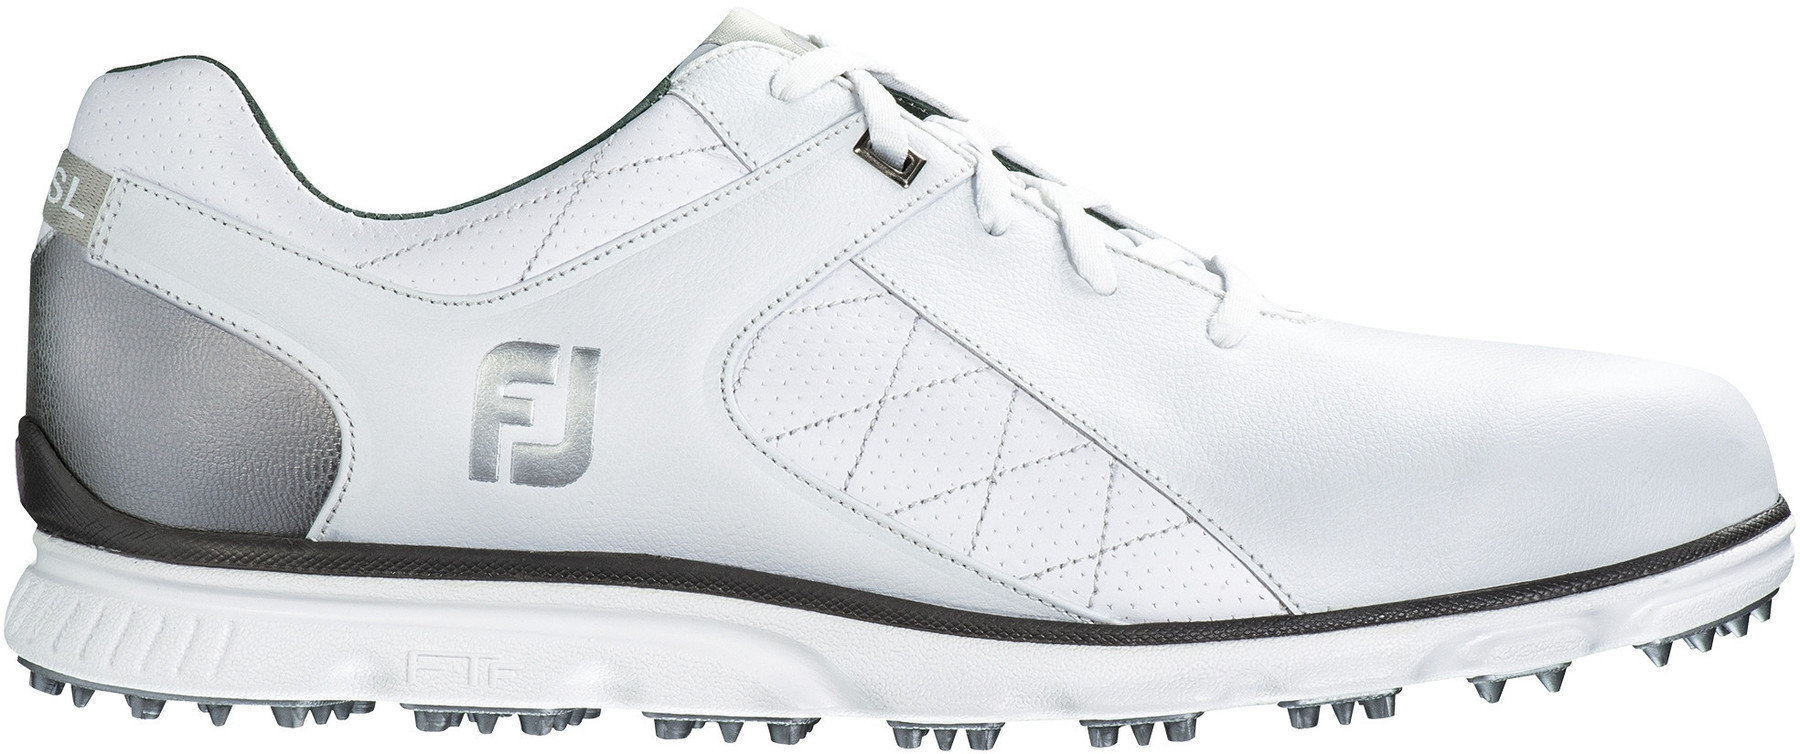 Men's golf shoes Footjoy Pro SL Mens Golf Shoes White/Silver US 9,5